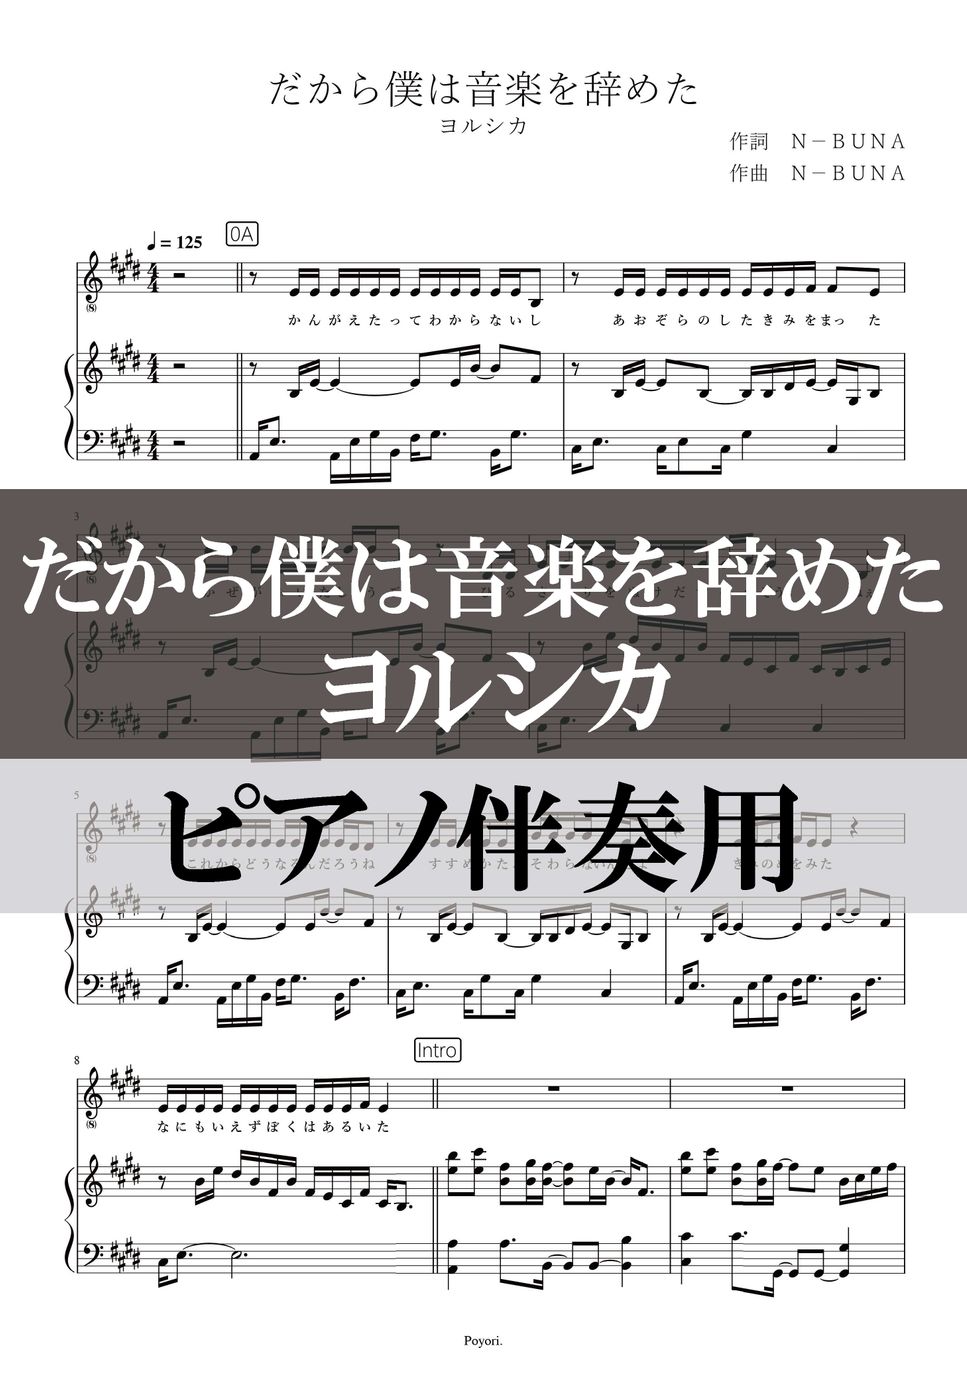 ヨルシカ - だから僕は音楽を辞めた (ピアノ伴奏/メロディ付) by poyori.